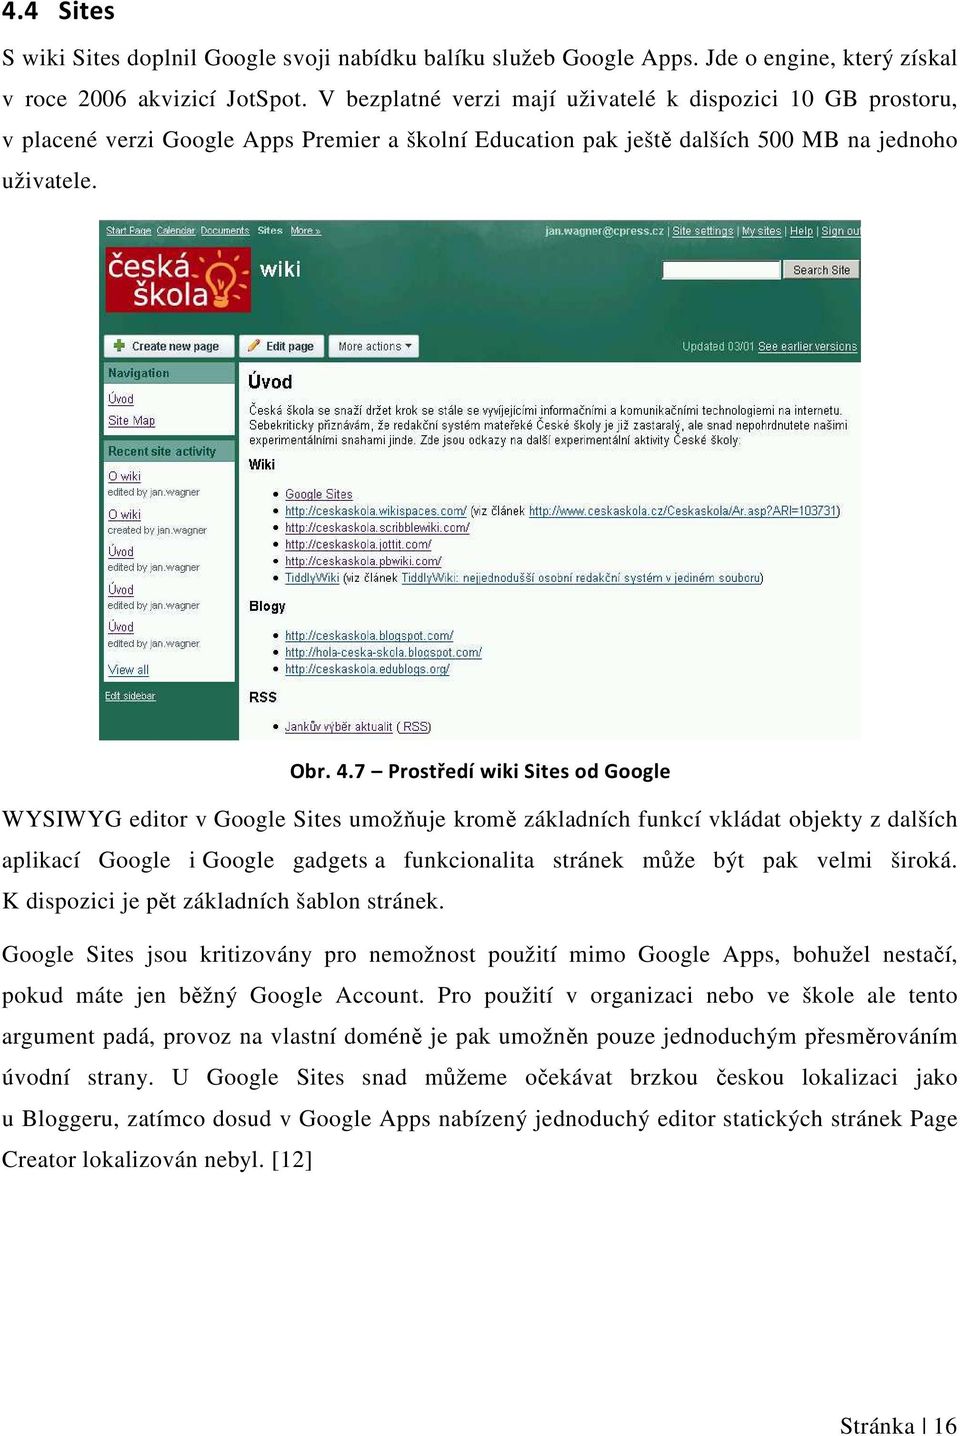 7 Prostředí wiki Sites od Google WYSIWYG editor v Google Sites umožňuje kromě základních funkcí vkládat objekty z dalších aplikací Google i Google gadgets a funkcionalita stránek může být pak velmi